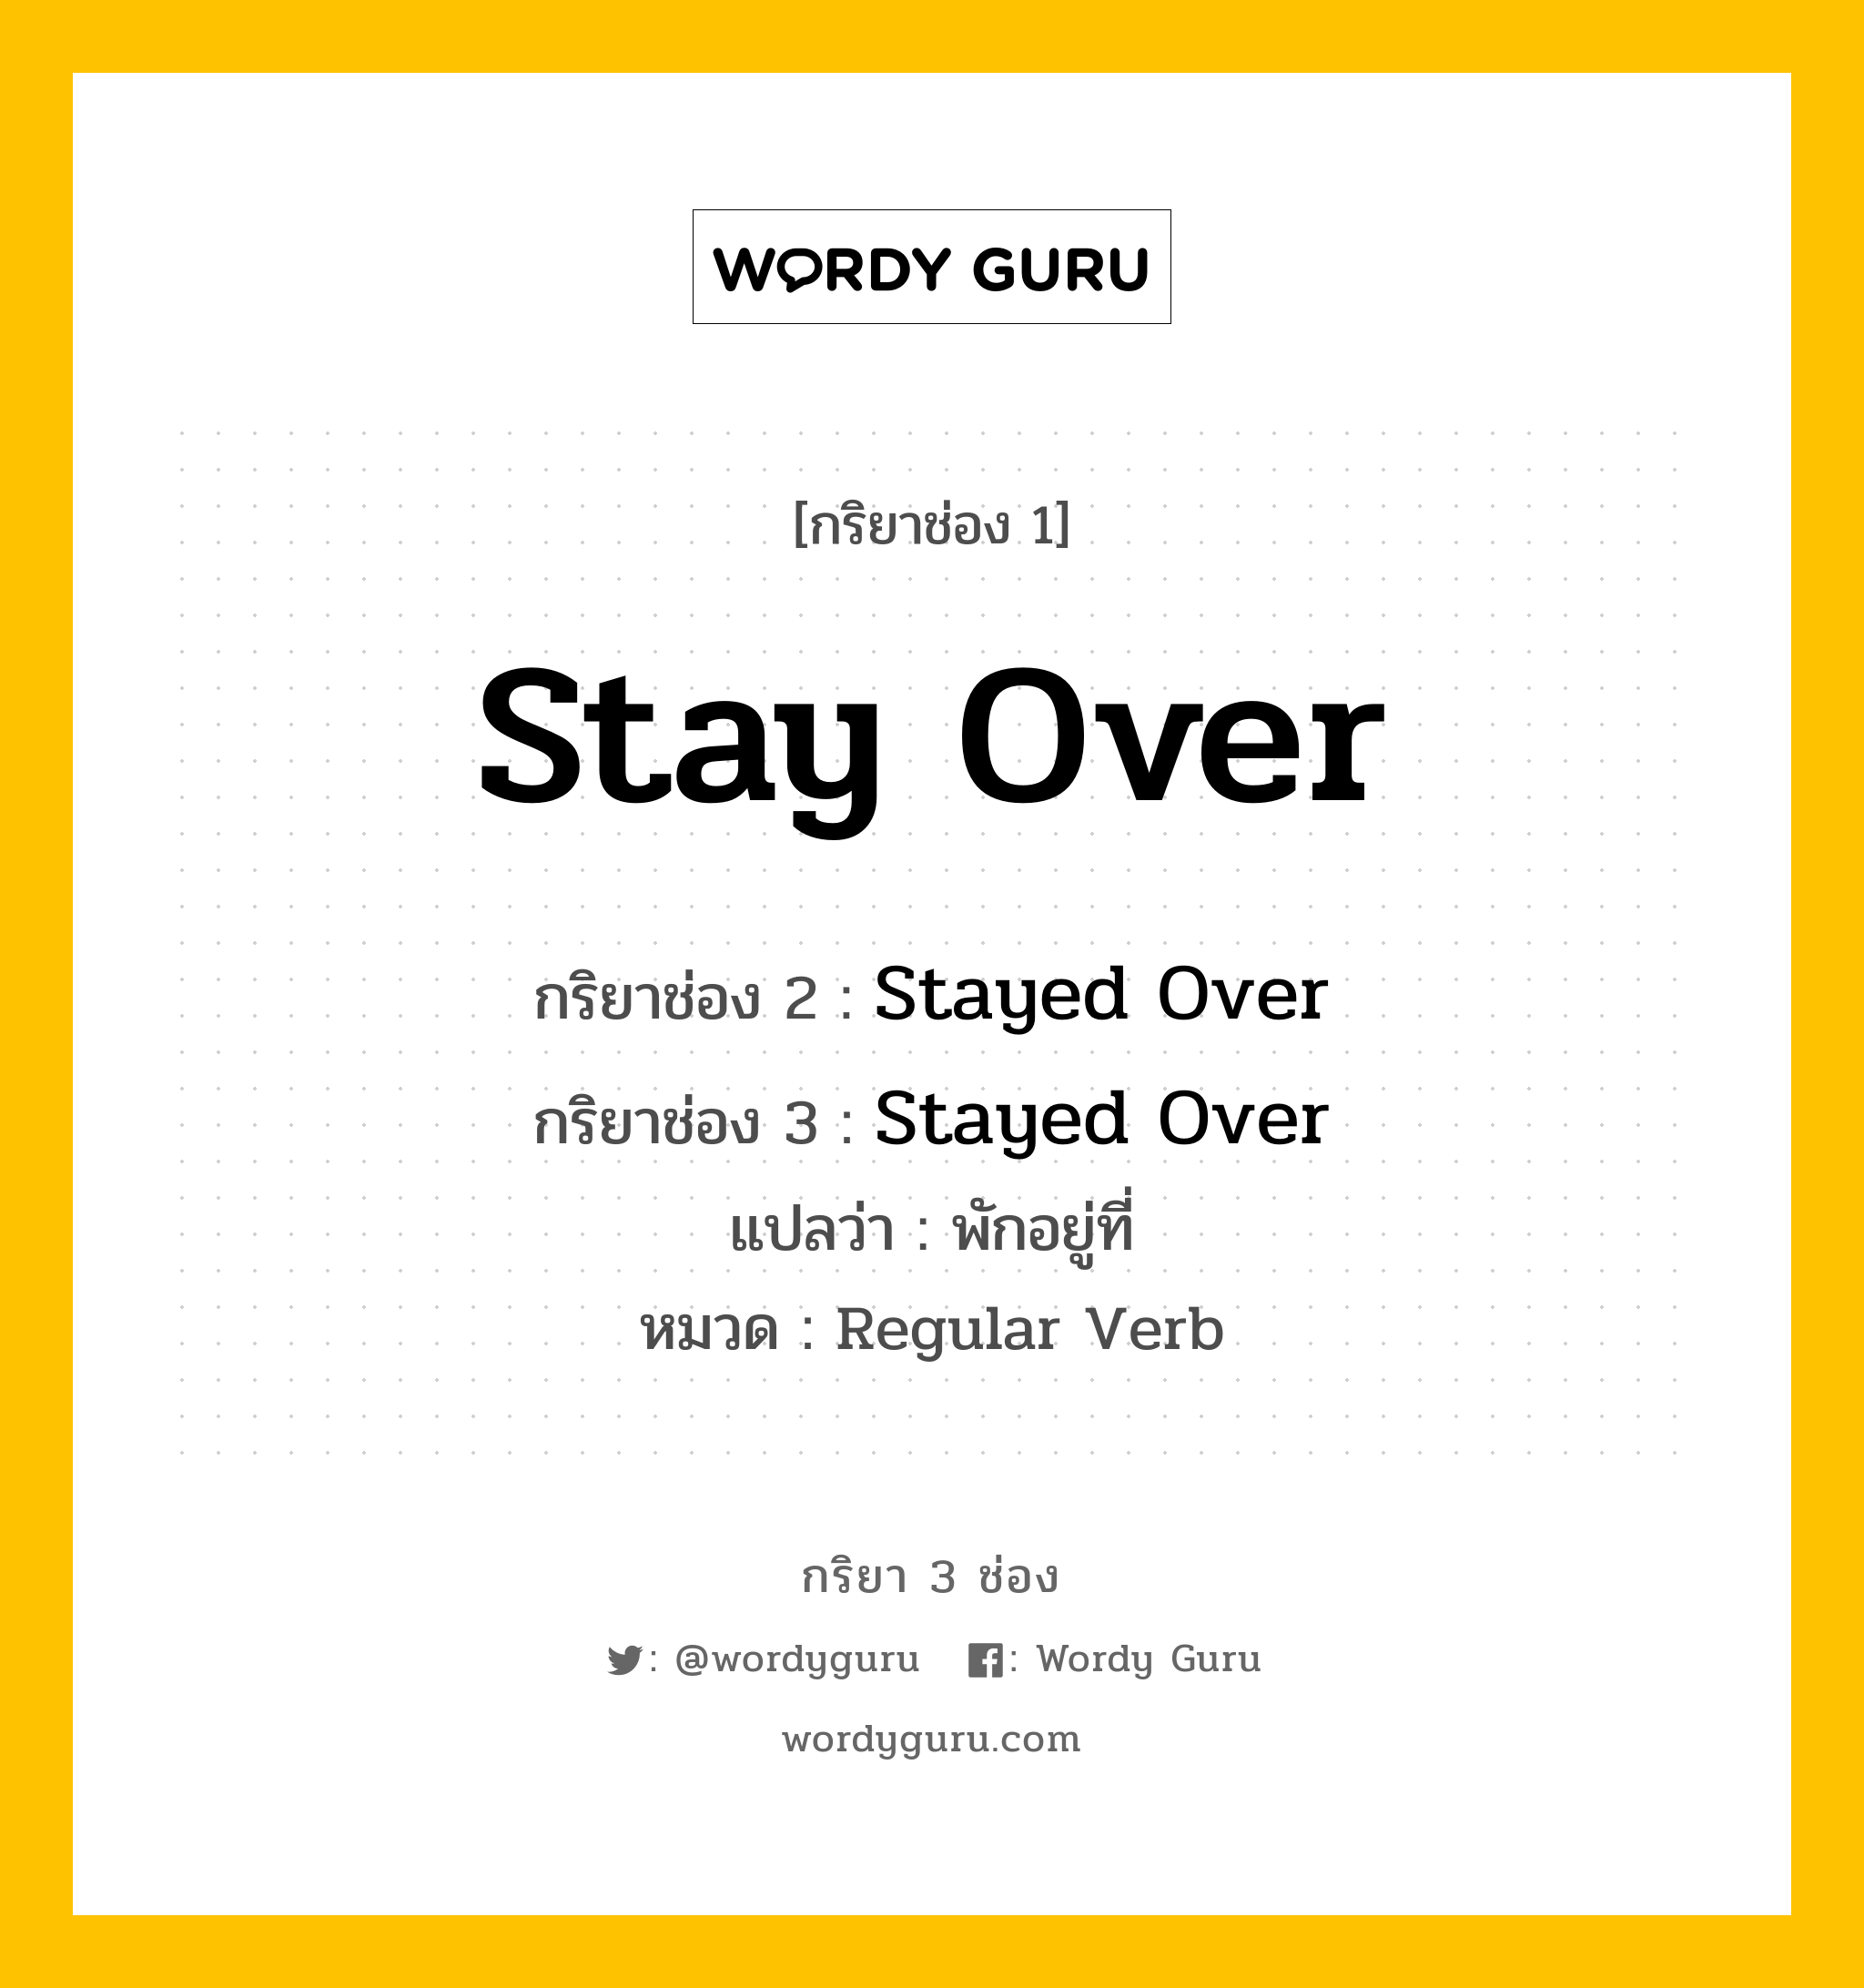 กริยา 3 ช่อง: Stay Over ช่อง 2 Stay Over ช่อง 3 คืออะไร, กริยาช่อง 1 Stay Over กริยาช่อง 2 Stayed Over กริยาช่อง 3 Stayed Over แปลว่า พักอยู่ที่ หมวด Regular Verb หมวด Regular Verb